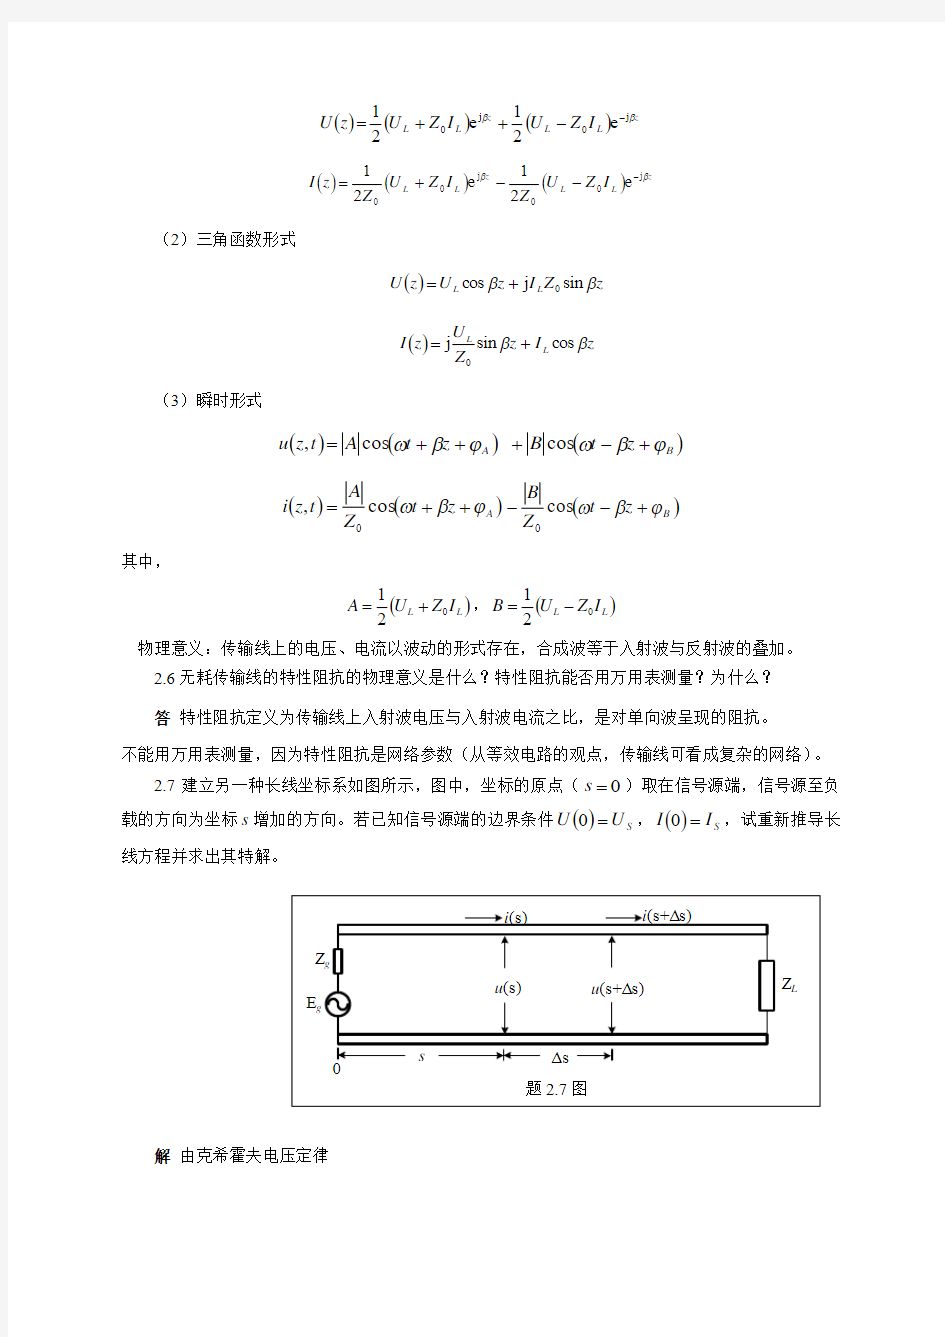 《微波技术与天线》傅文斌-习题答案-第2章